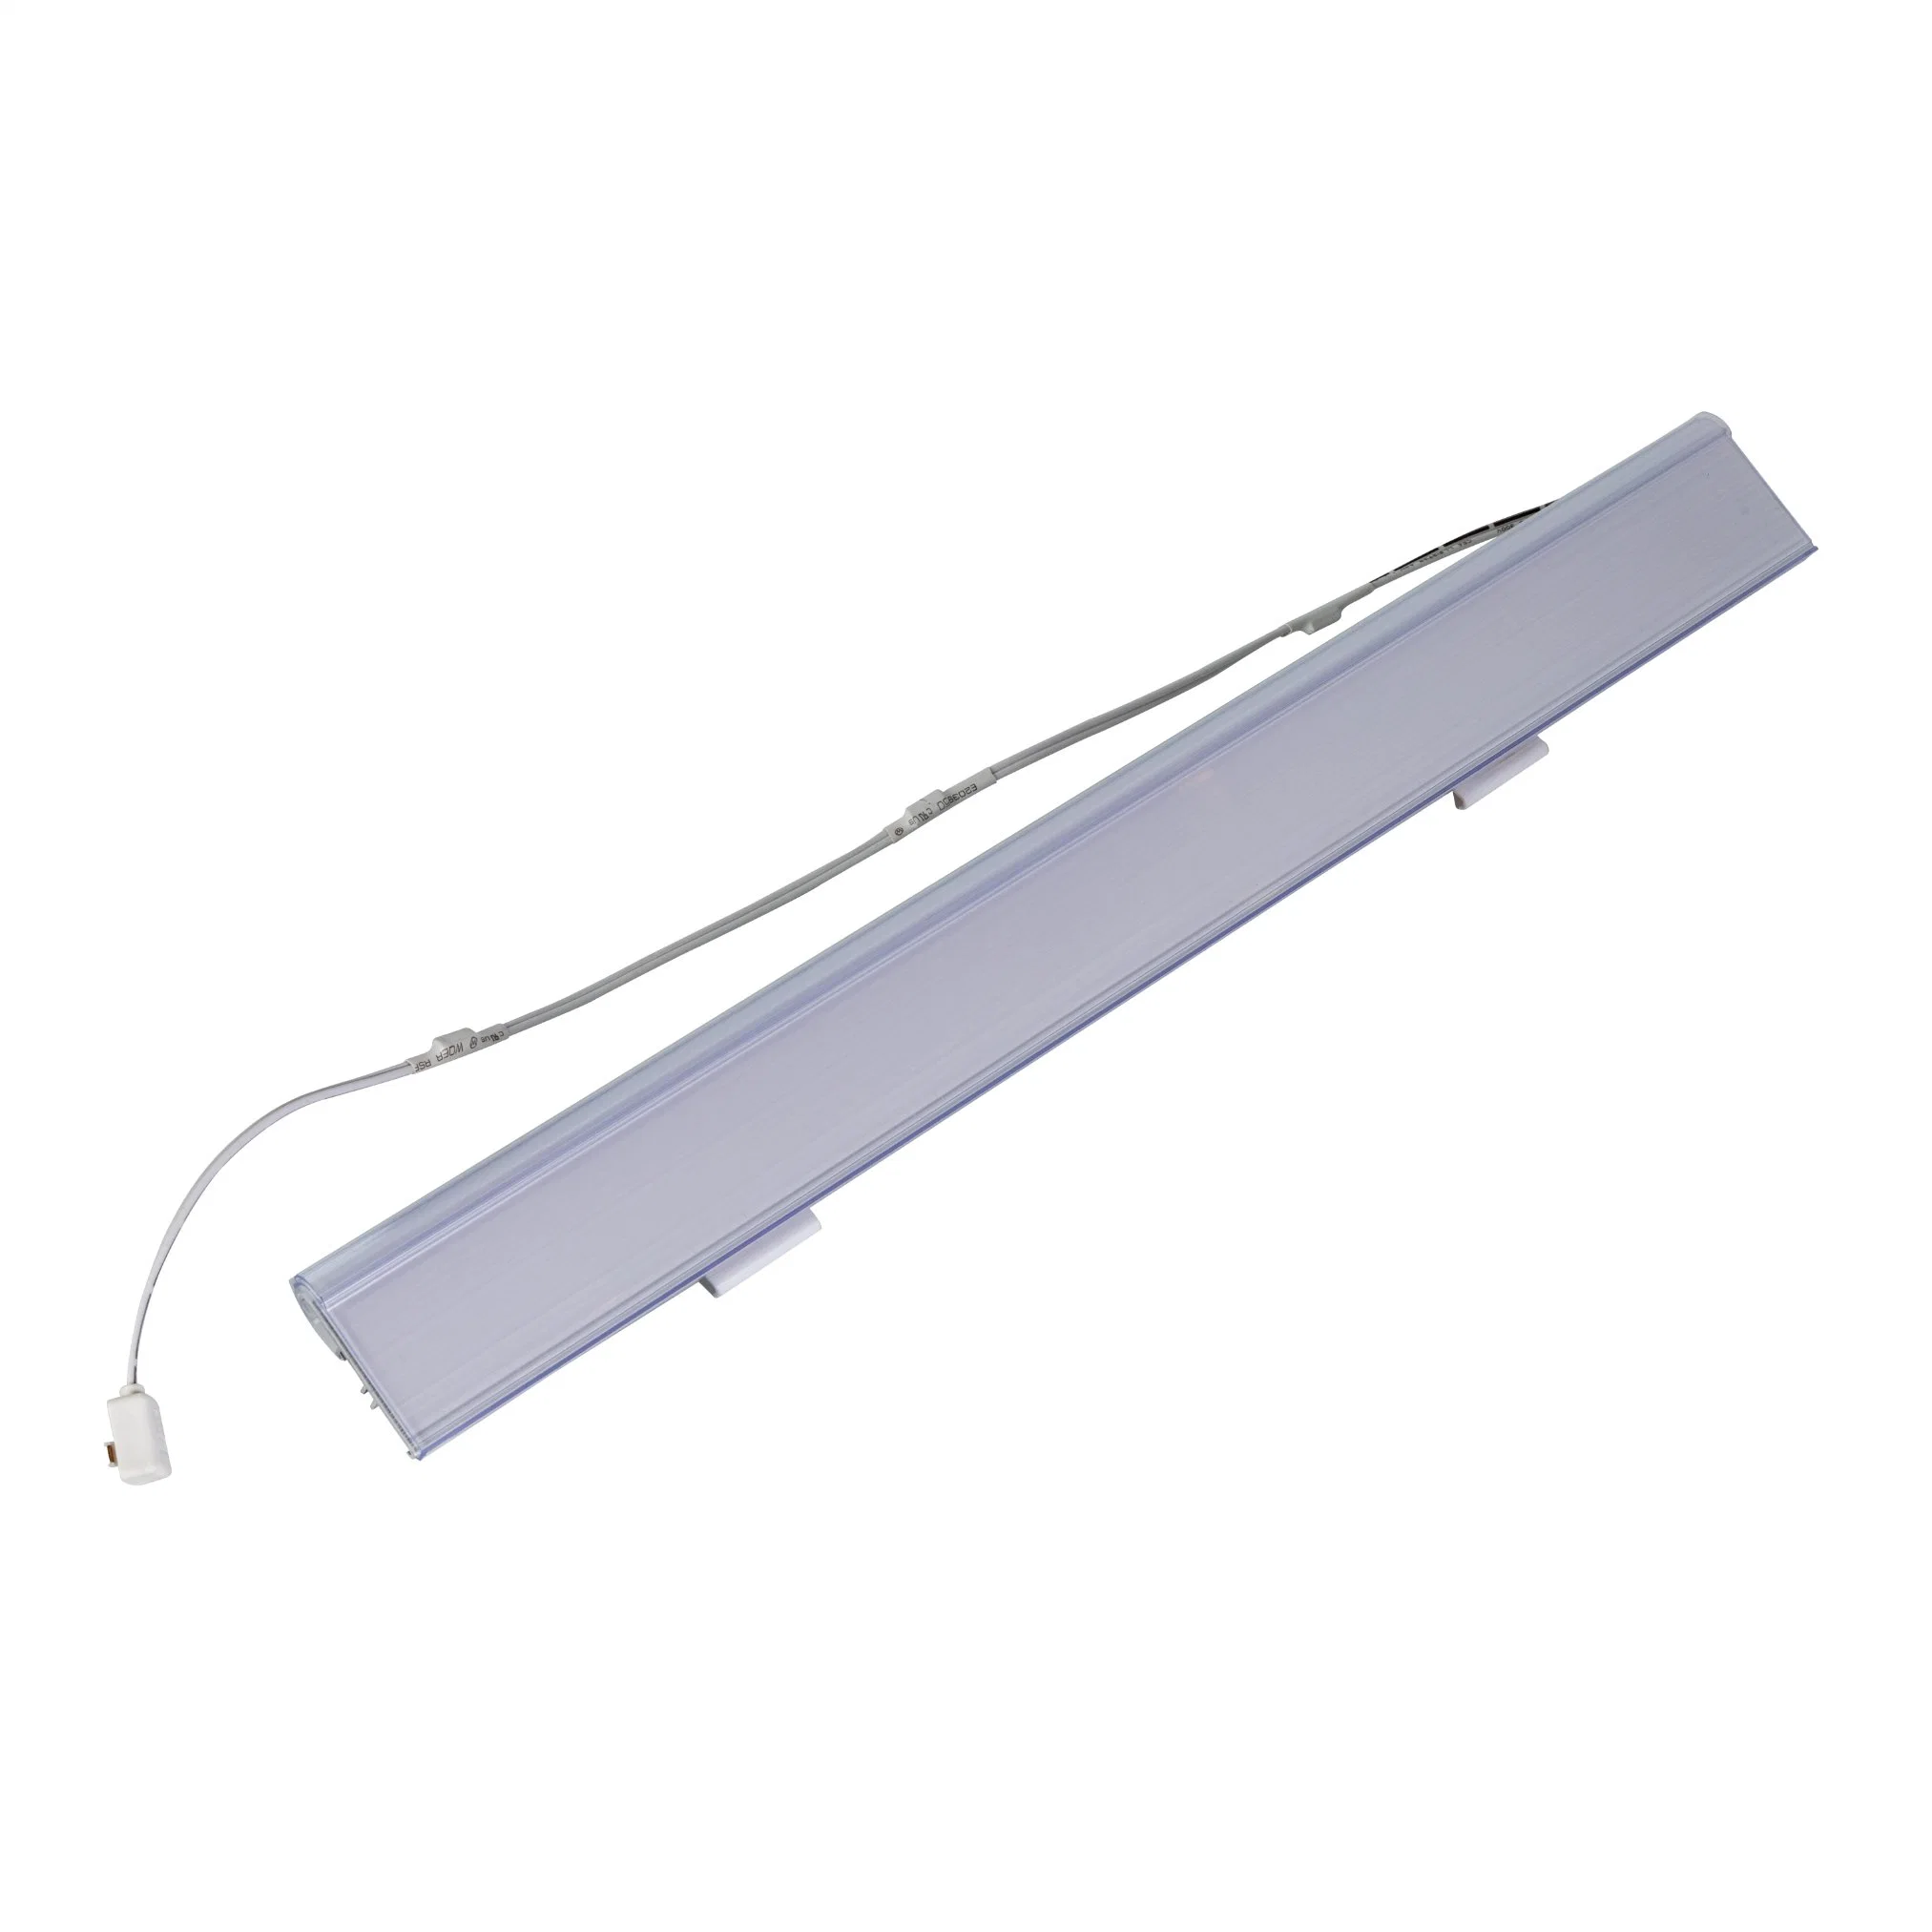 LED Tag Light avec profilé en aluminium pour l'éclairage des étagères